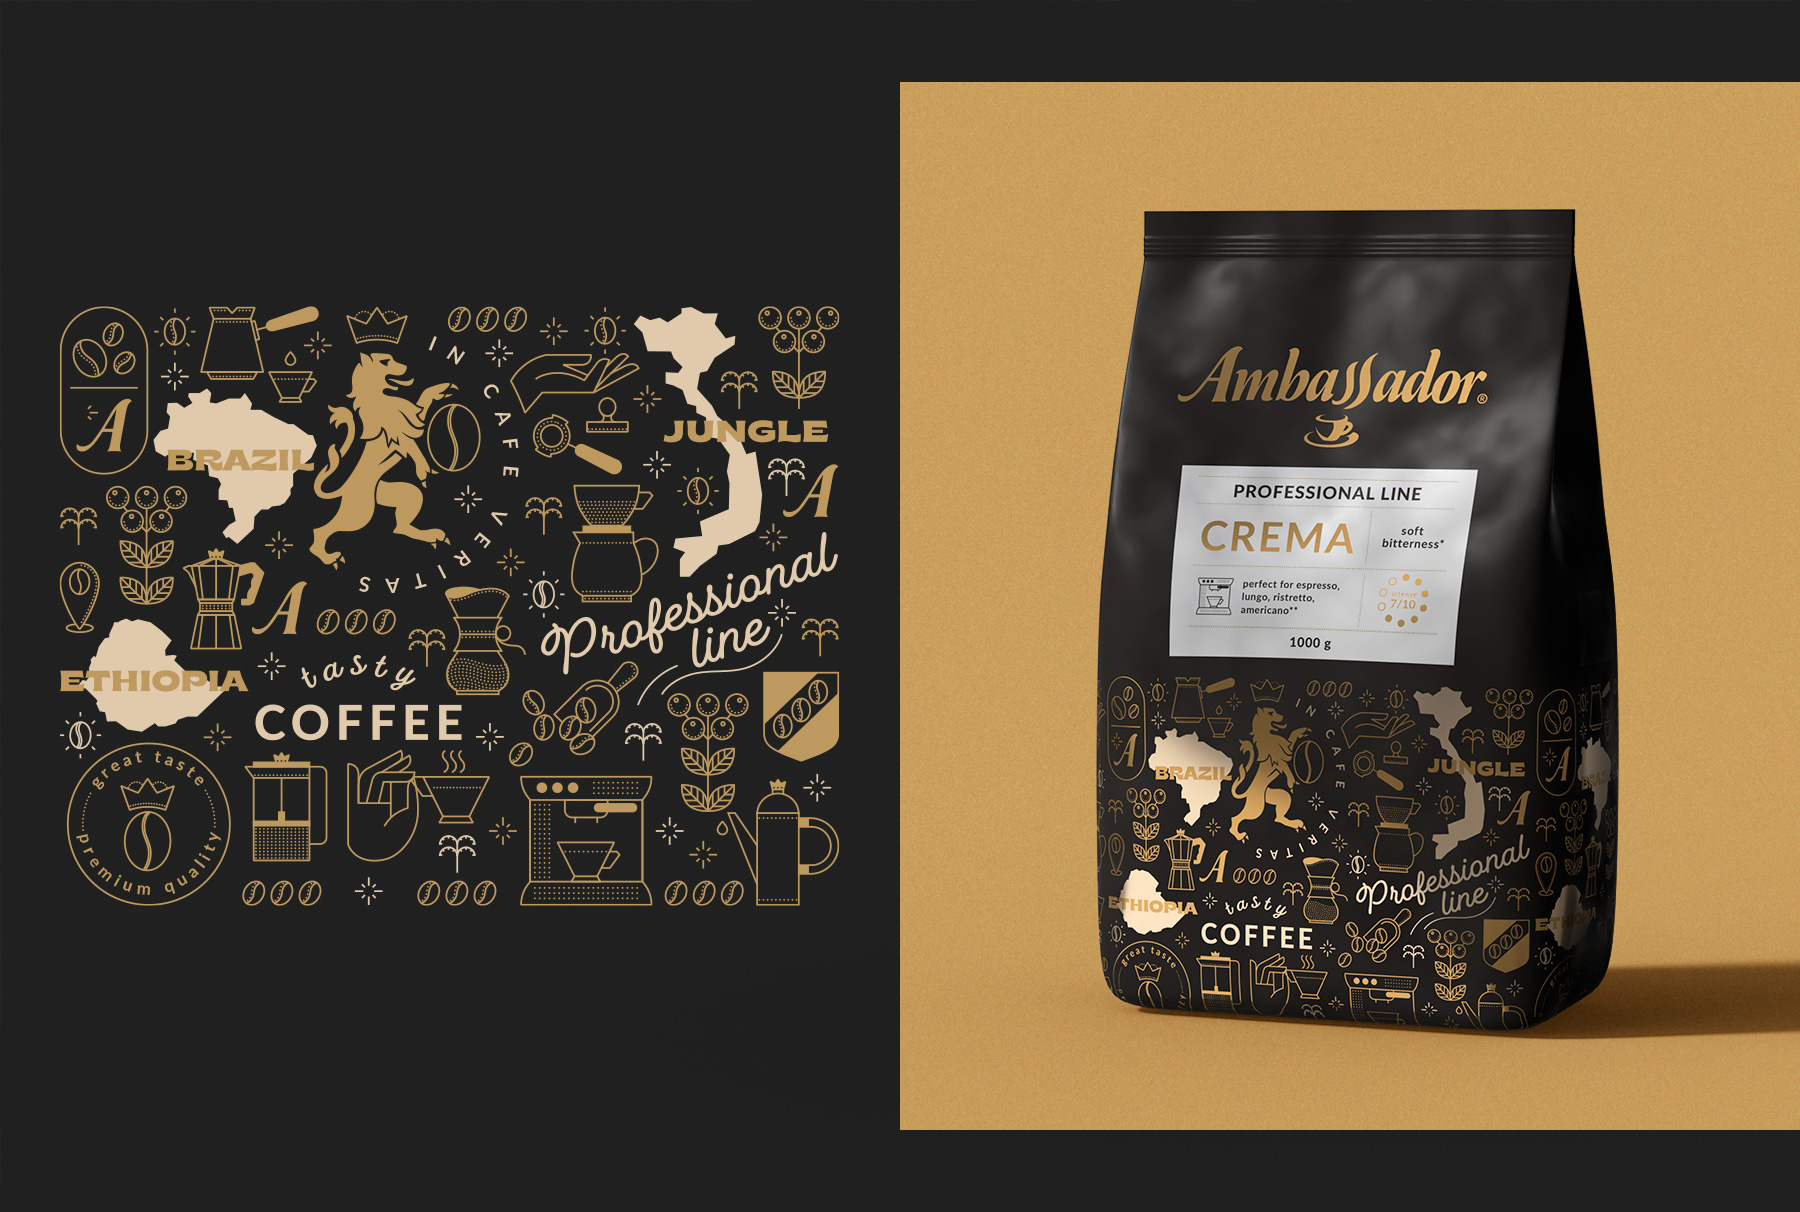 Дизайн упаковки кофе Ambassador Professional line